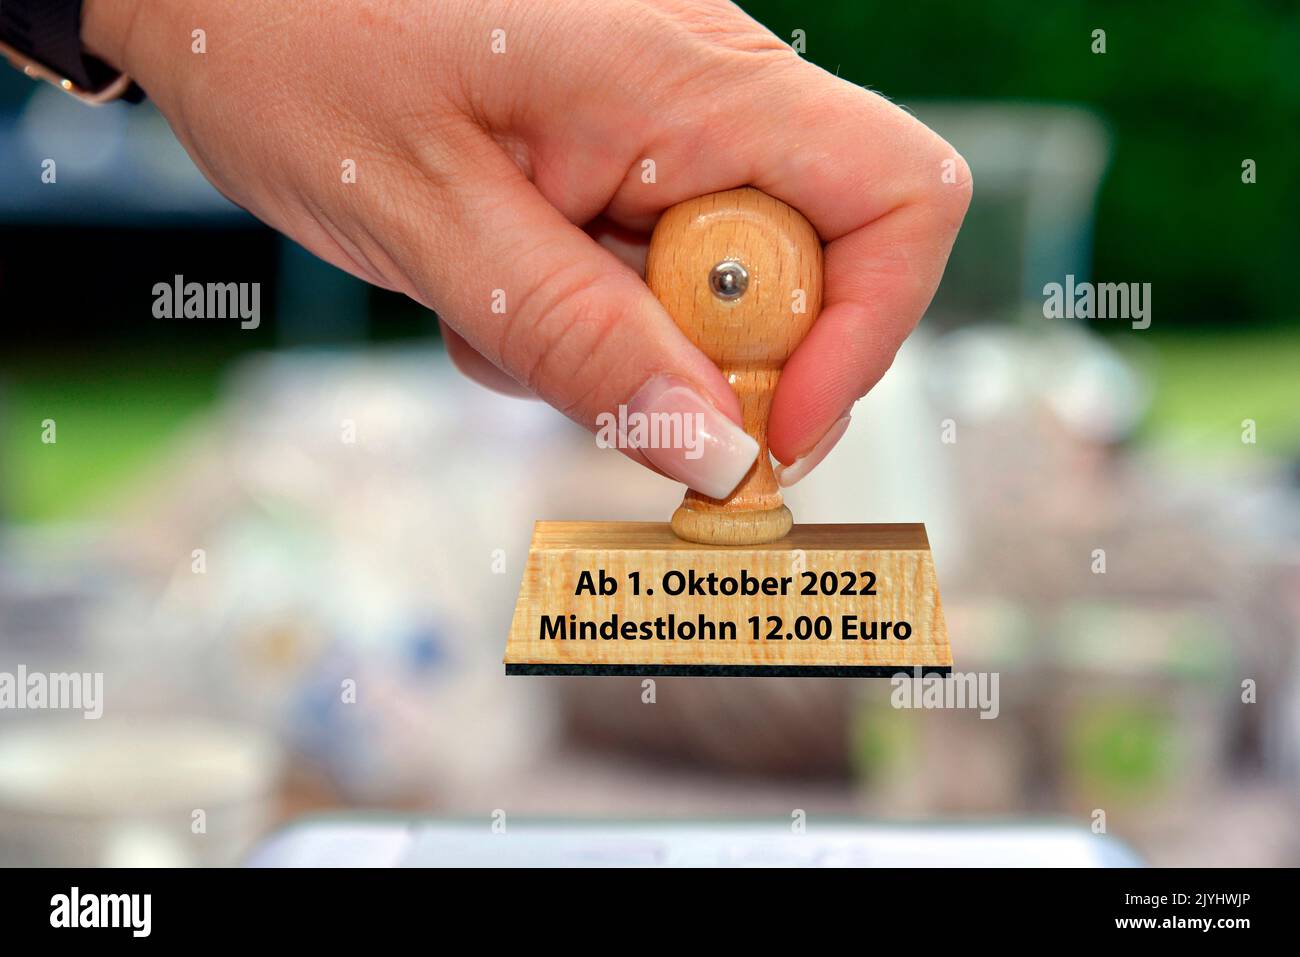 mano della donna con la scritta del francobollo ab 1. Oktober Mindestlohn 12 Euro, nuovo pagamento minimo di 12 €, Germania Foto Stock